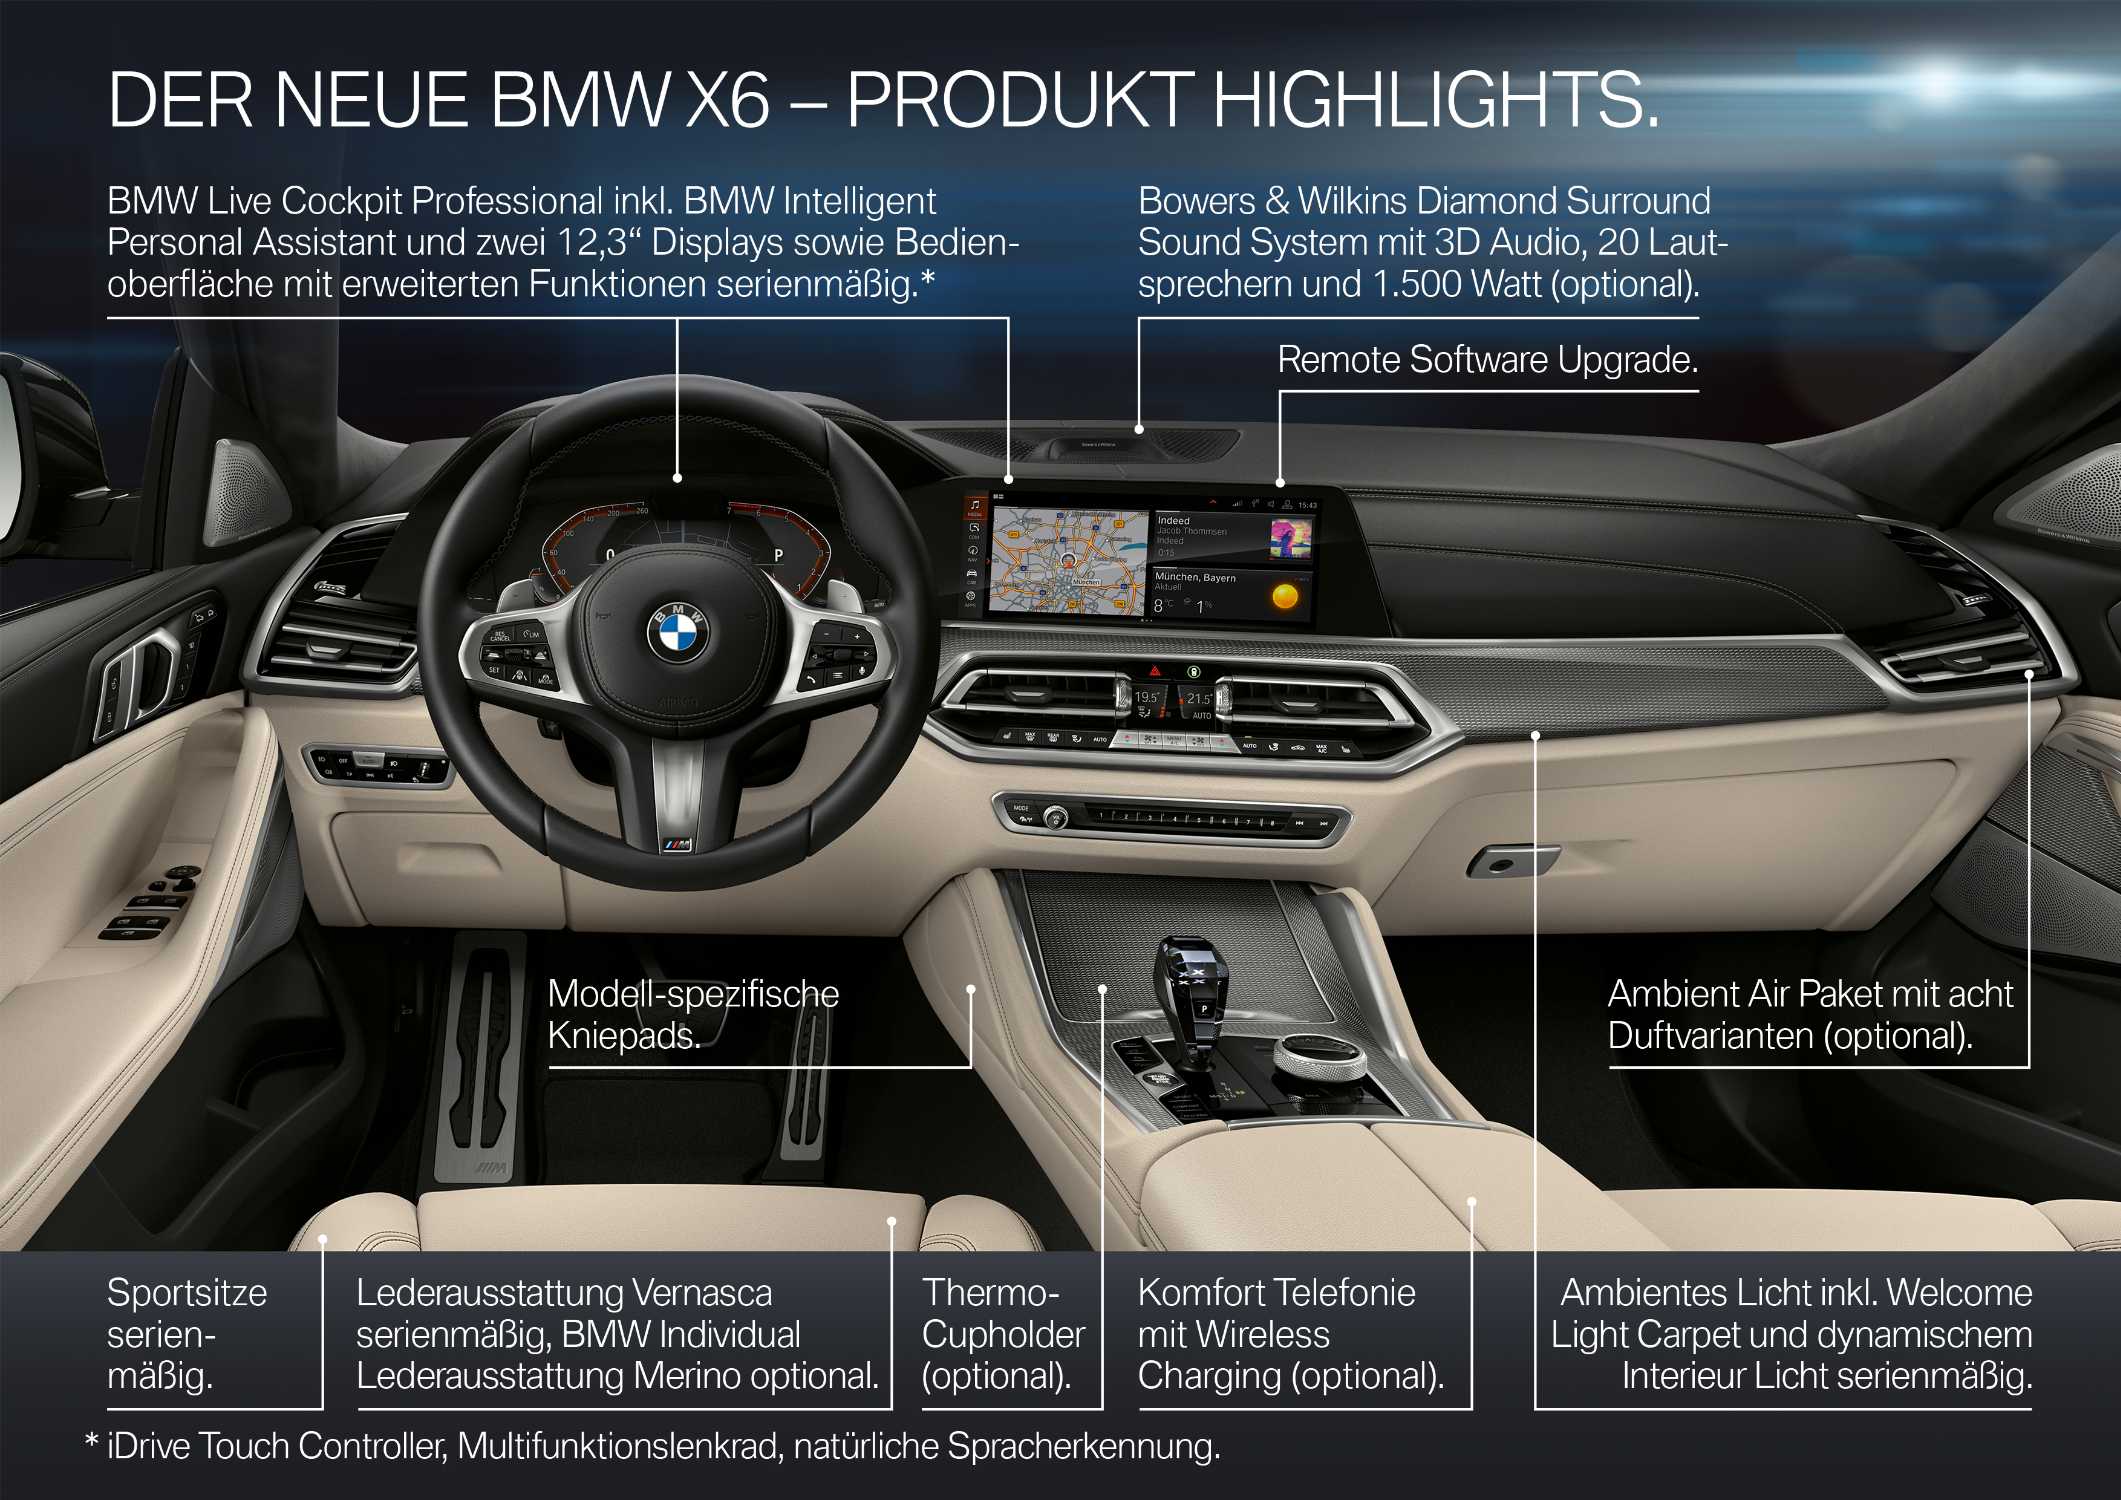 Der neue BMW X6 – Highlights (07/2019).